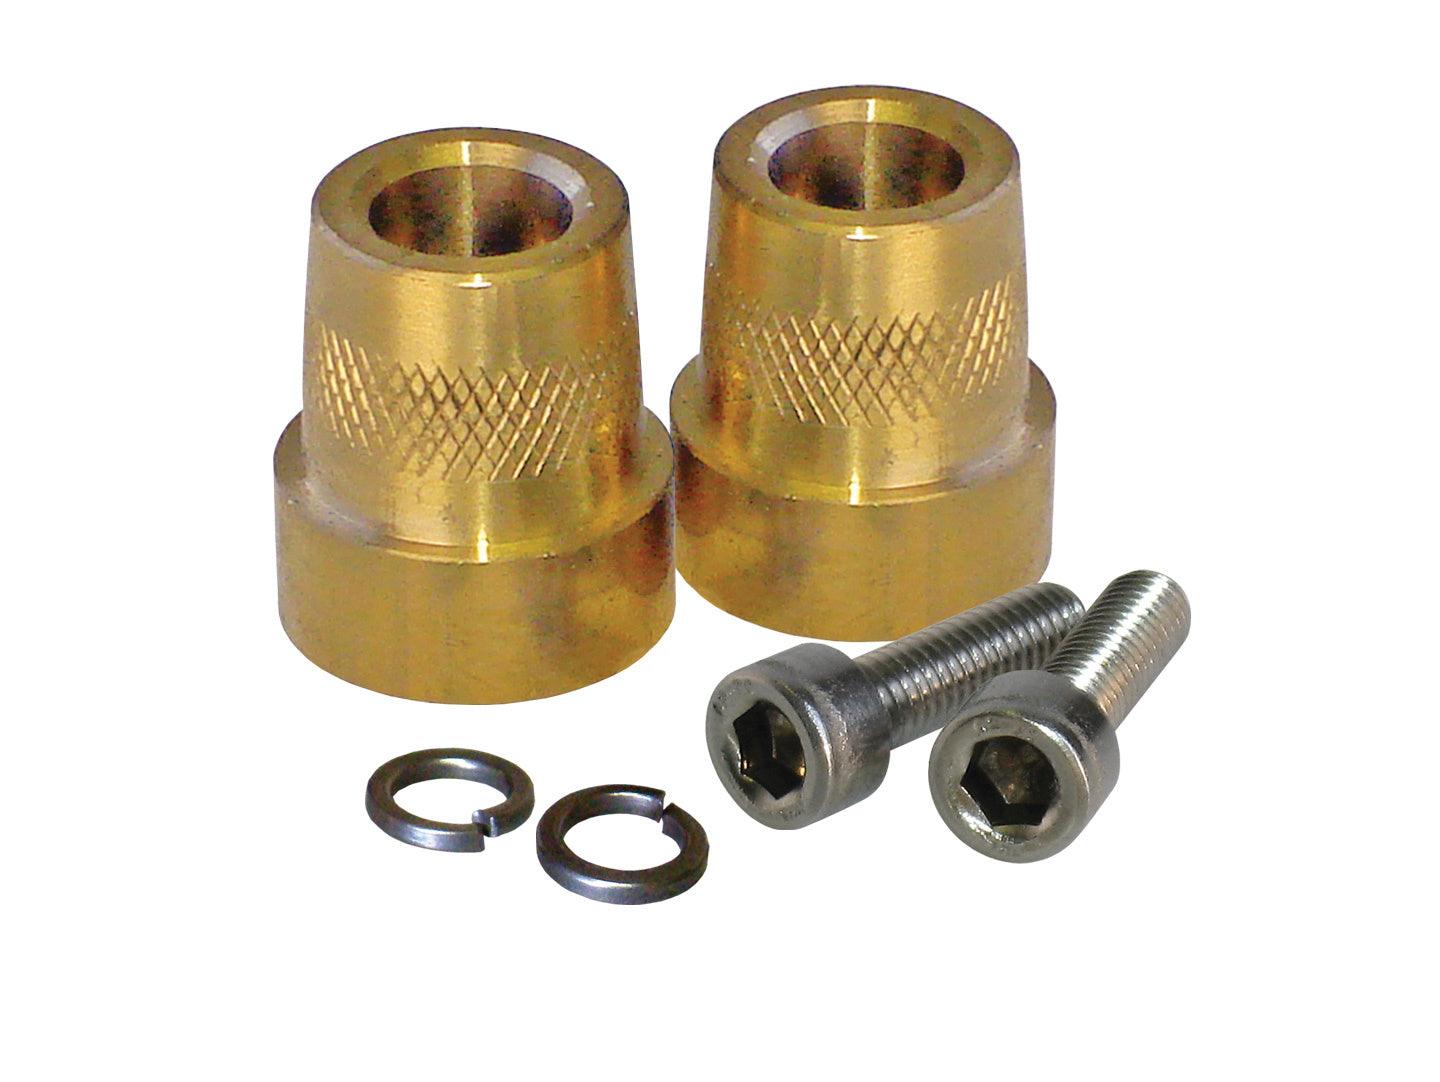 Tall Brass Post Adaptors 6mm - Burlile Performance Products